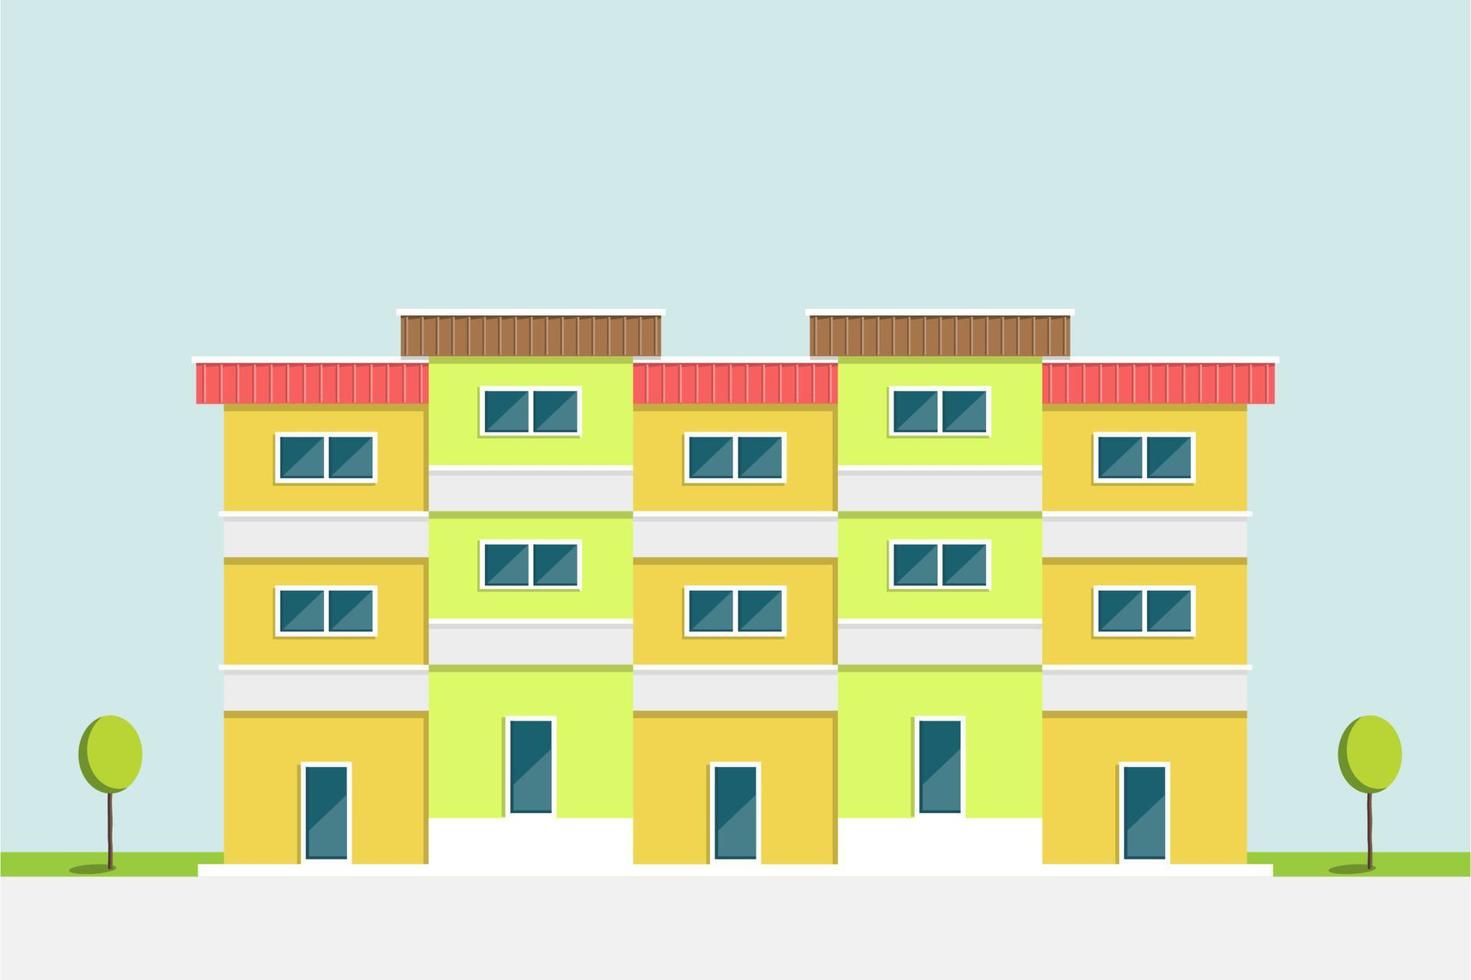 design plat, immeuble d'appartements vert et jaune style asie avec fond de ciel bleu clair, illustration vectorielle vecteur